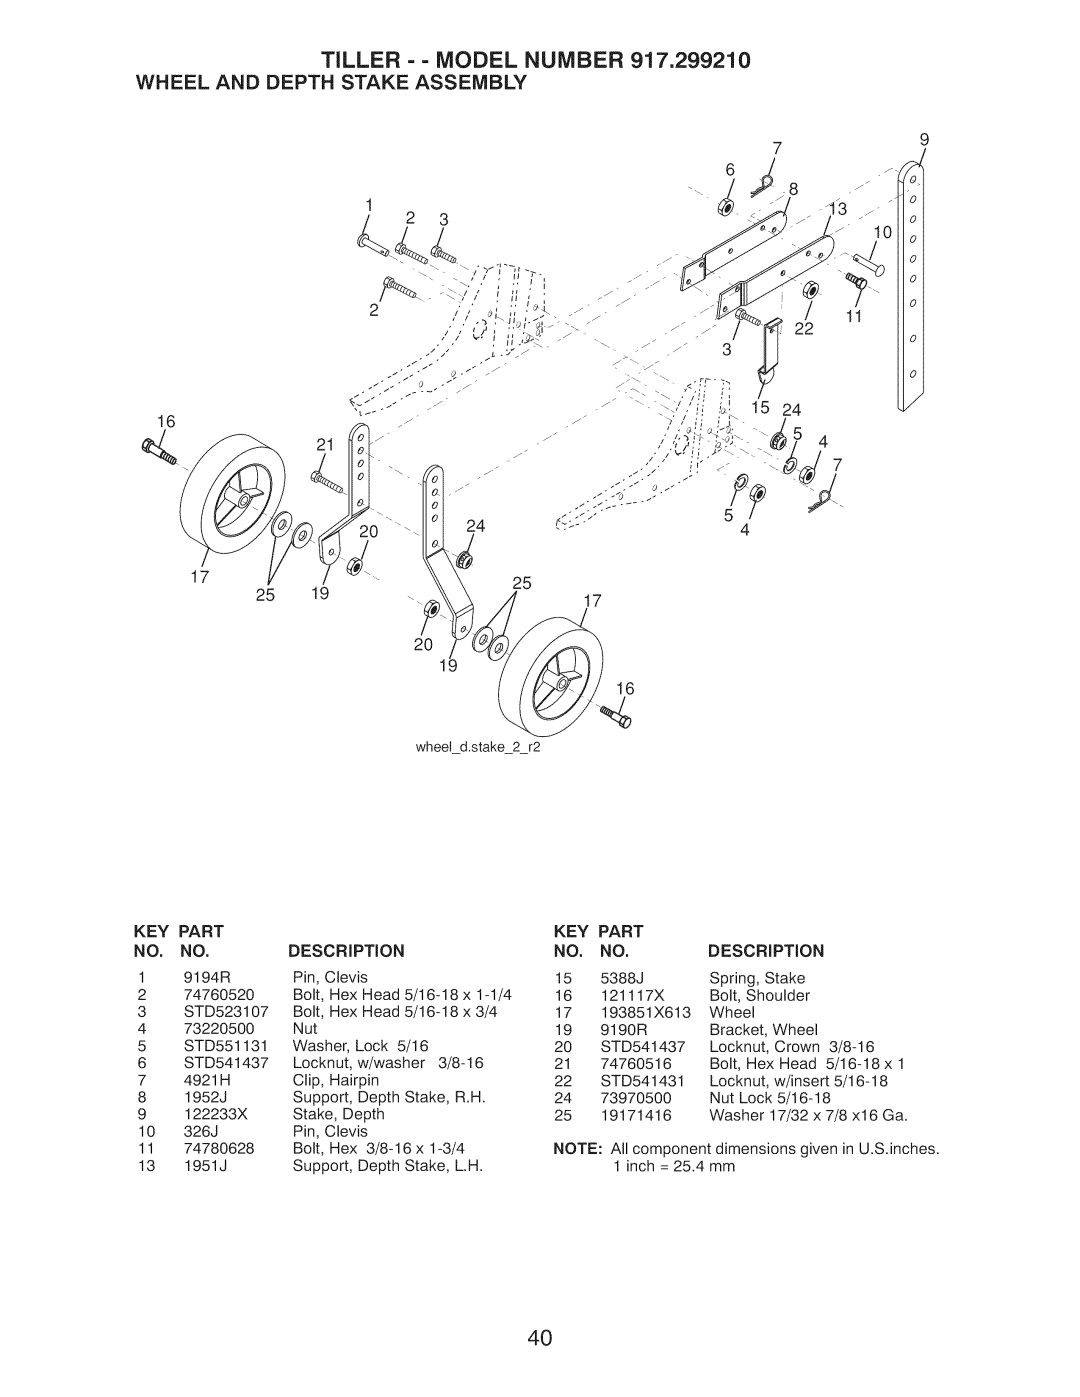 Craftsman 917.29921 owner manual Tiller - - Model Number, Wheel And Depth Stake Assembly, Key Part 